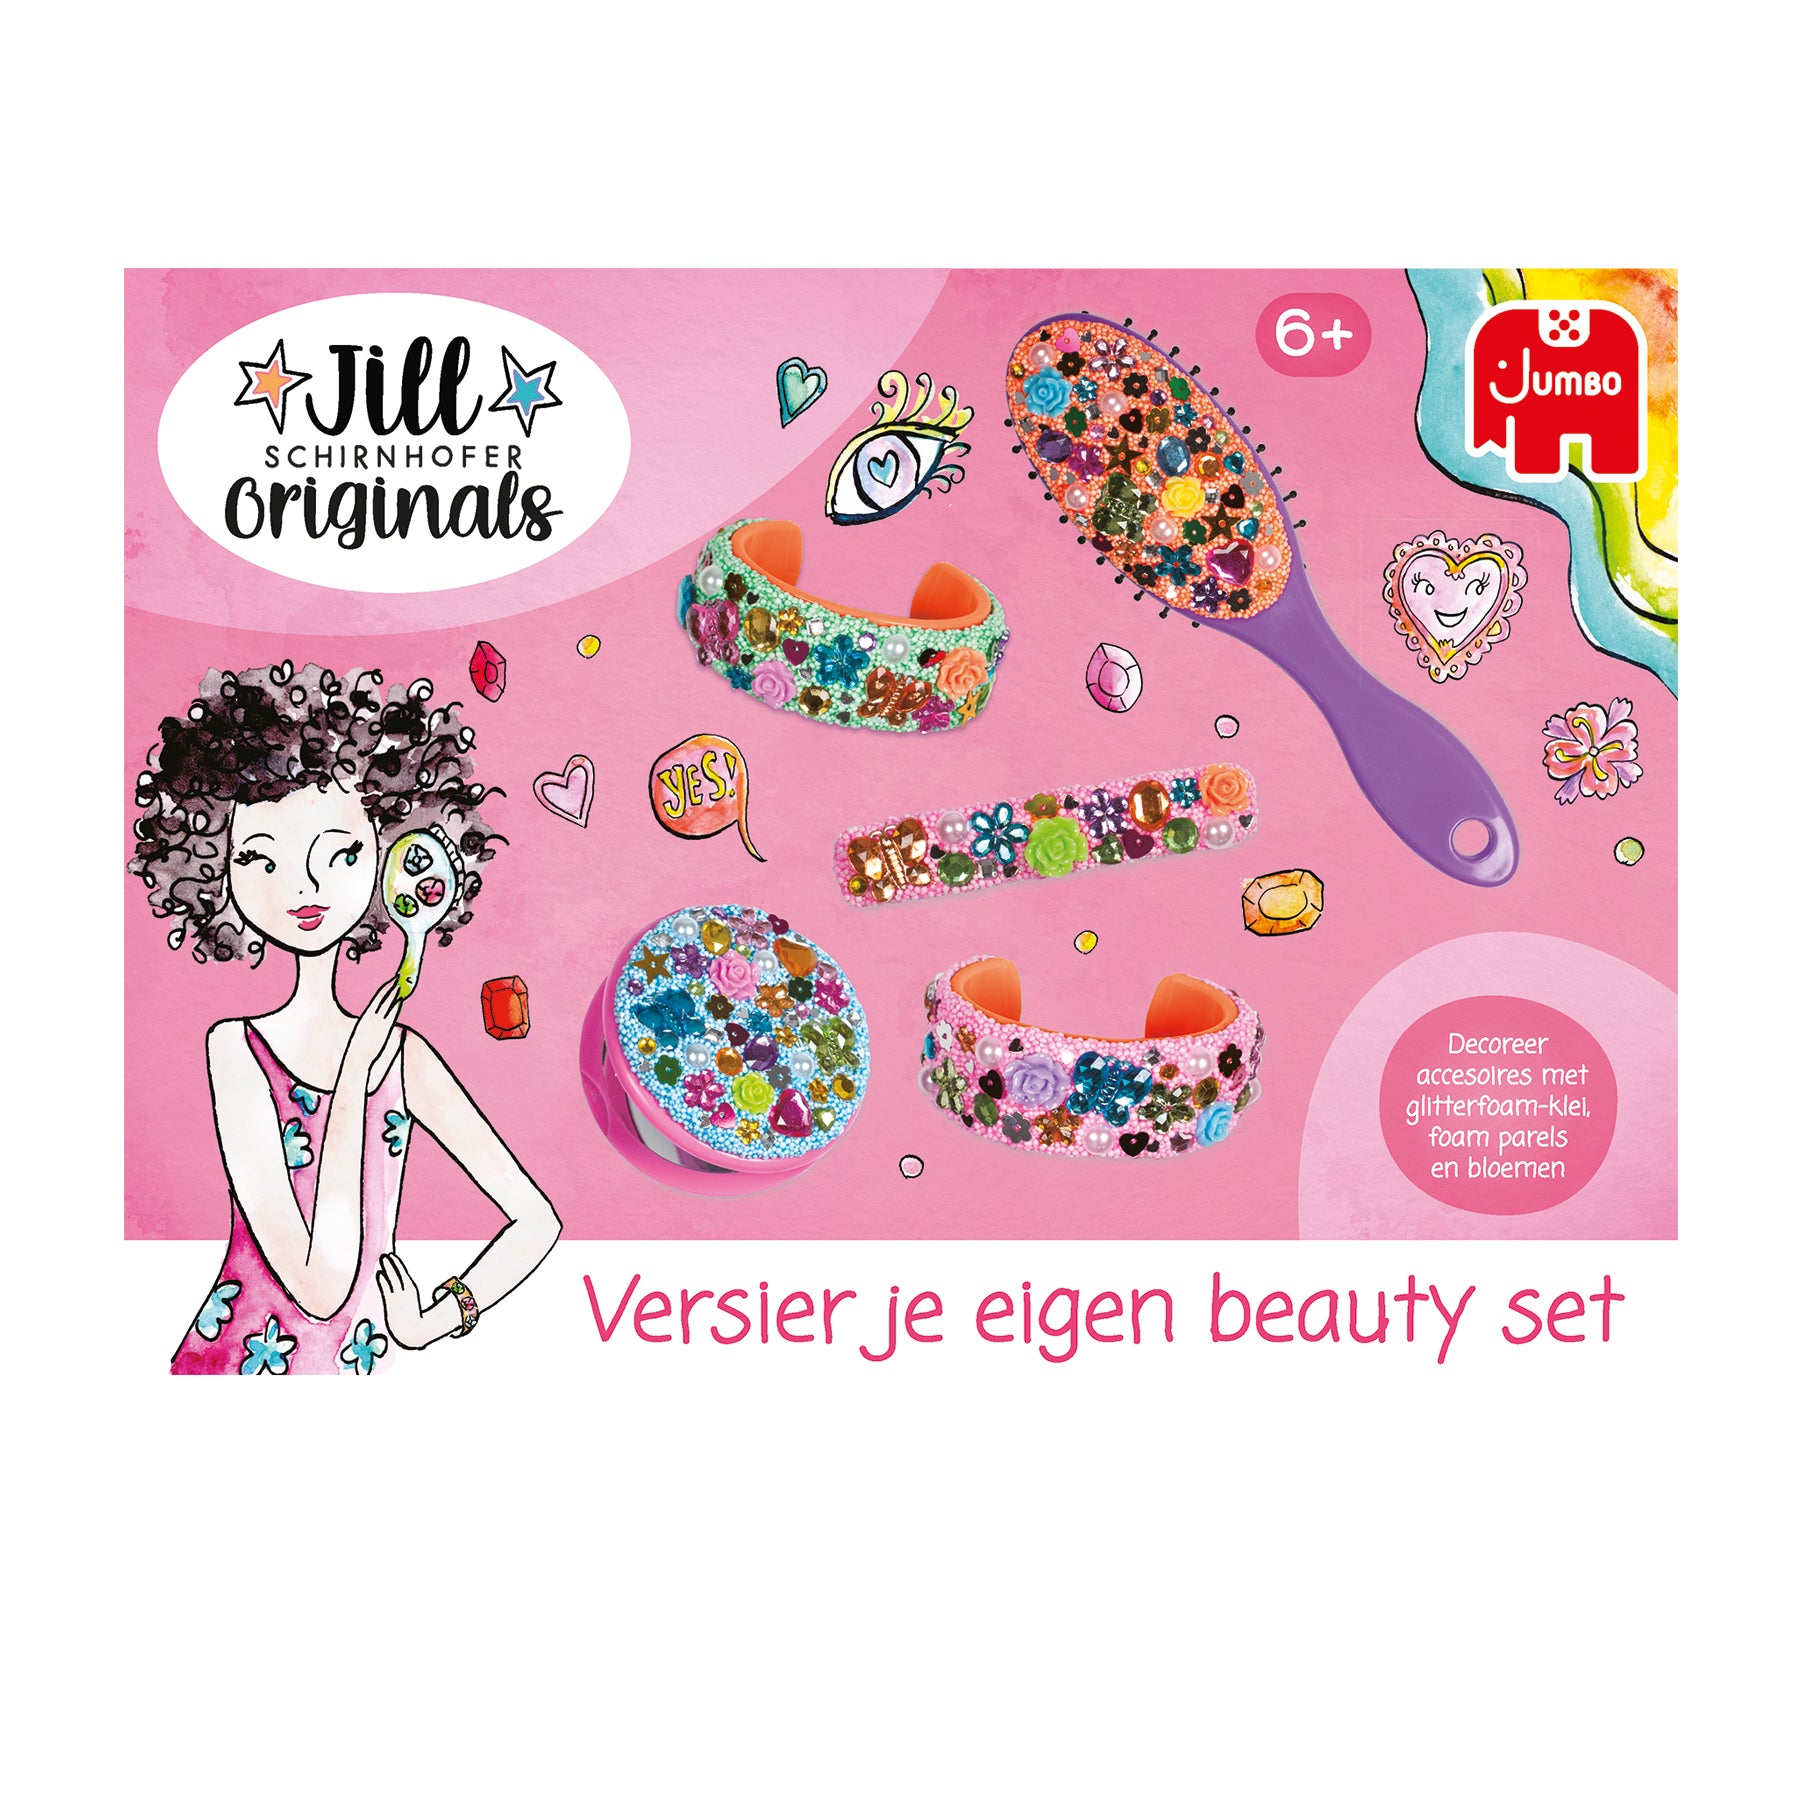 Versier je eigen beauty set - Jill - product image - Jumboplay.com